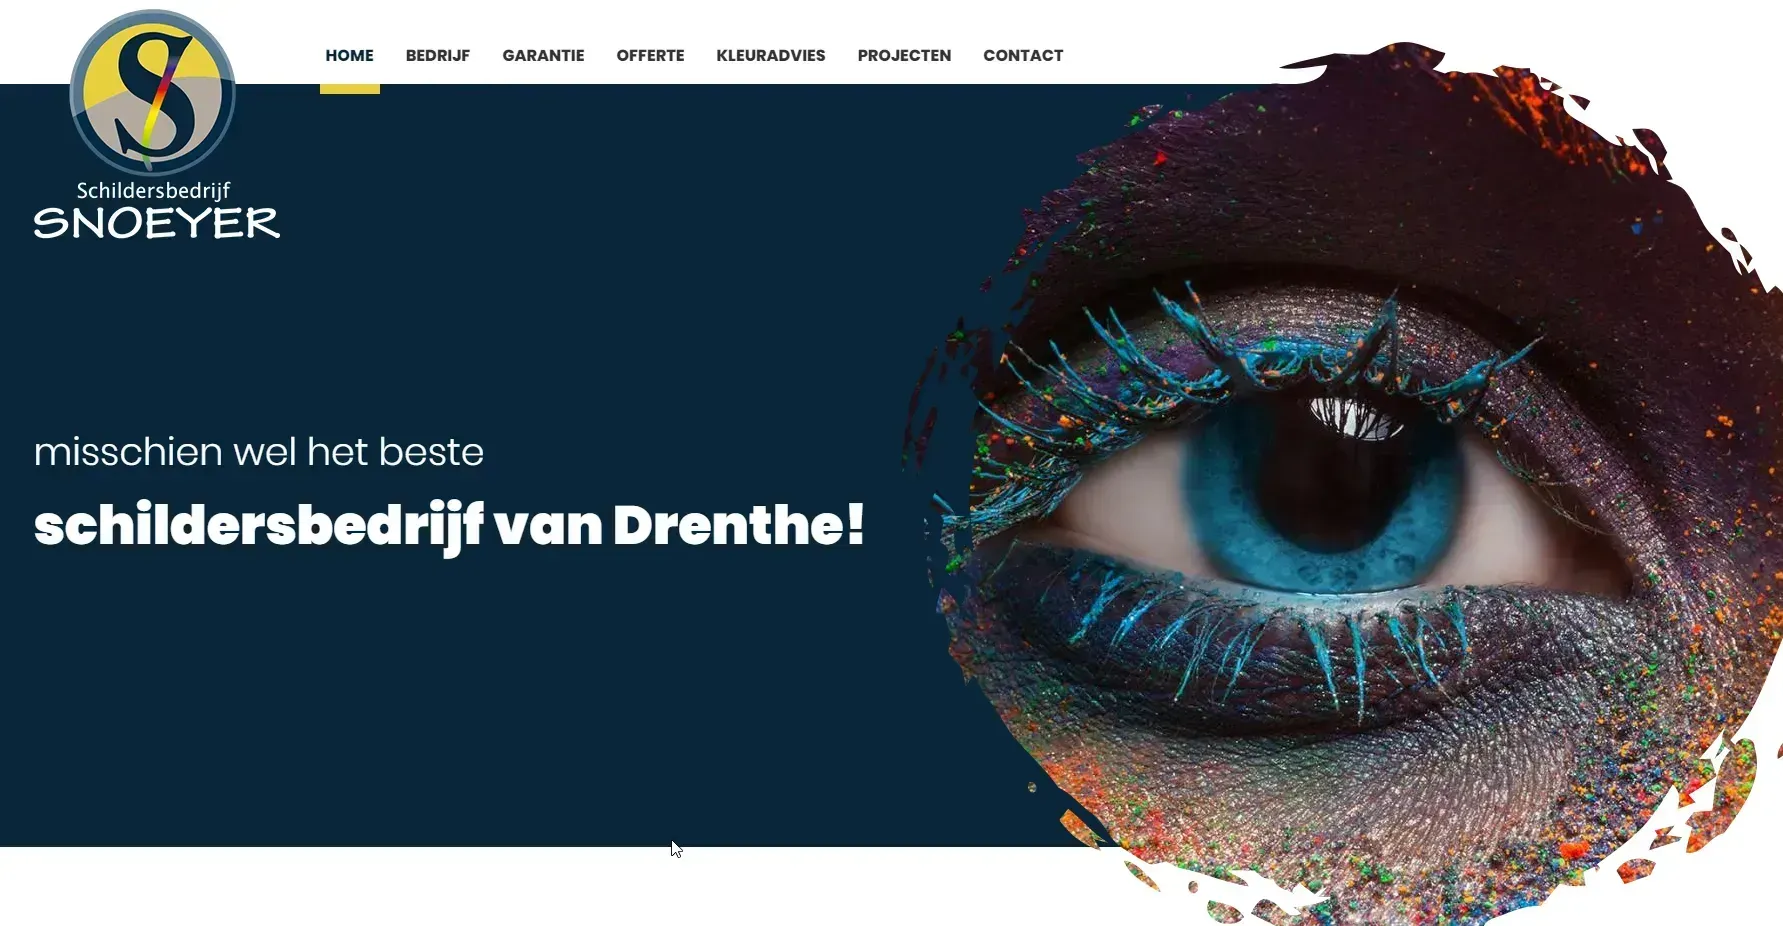 De website van Schildersbedrijf Snoeyer weer strak in de lak!